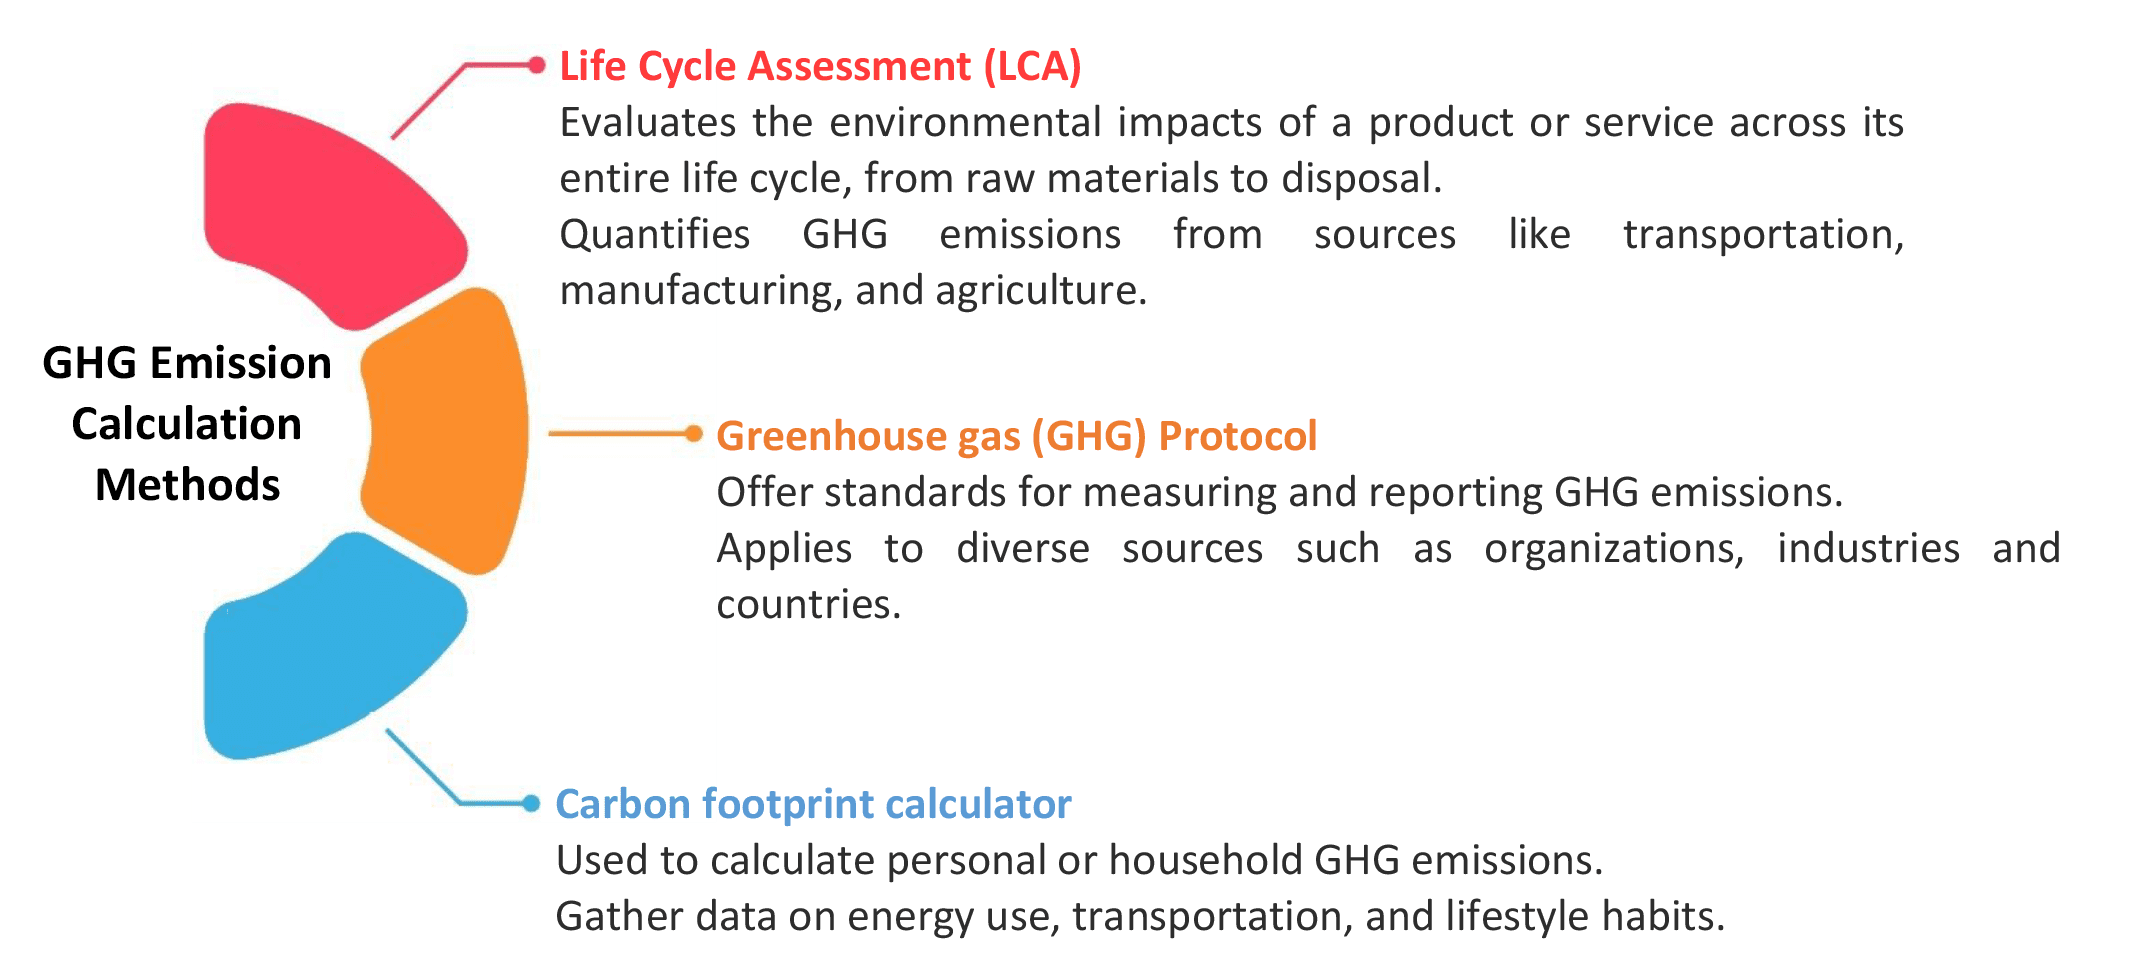 GHG emission calculation methods